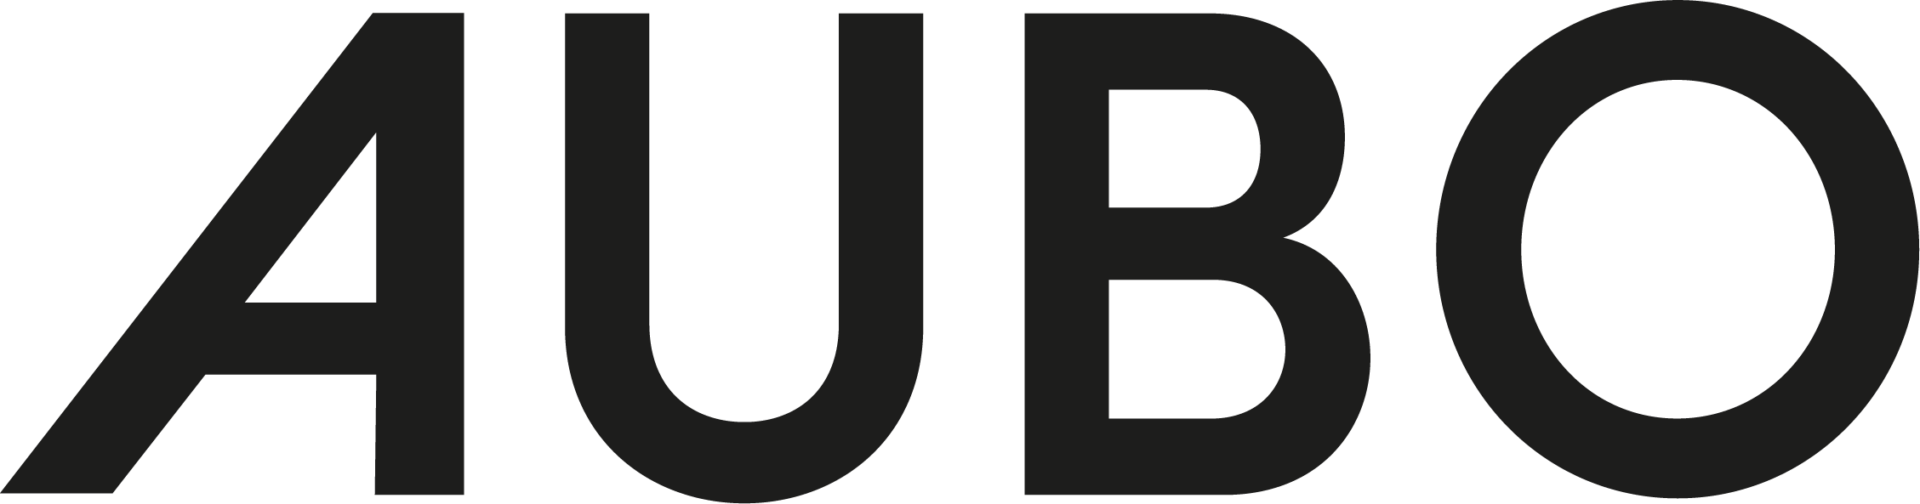 AUBO PRODUCTION A/S logo